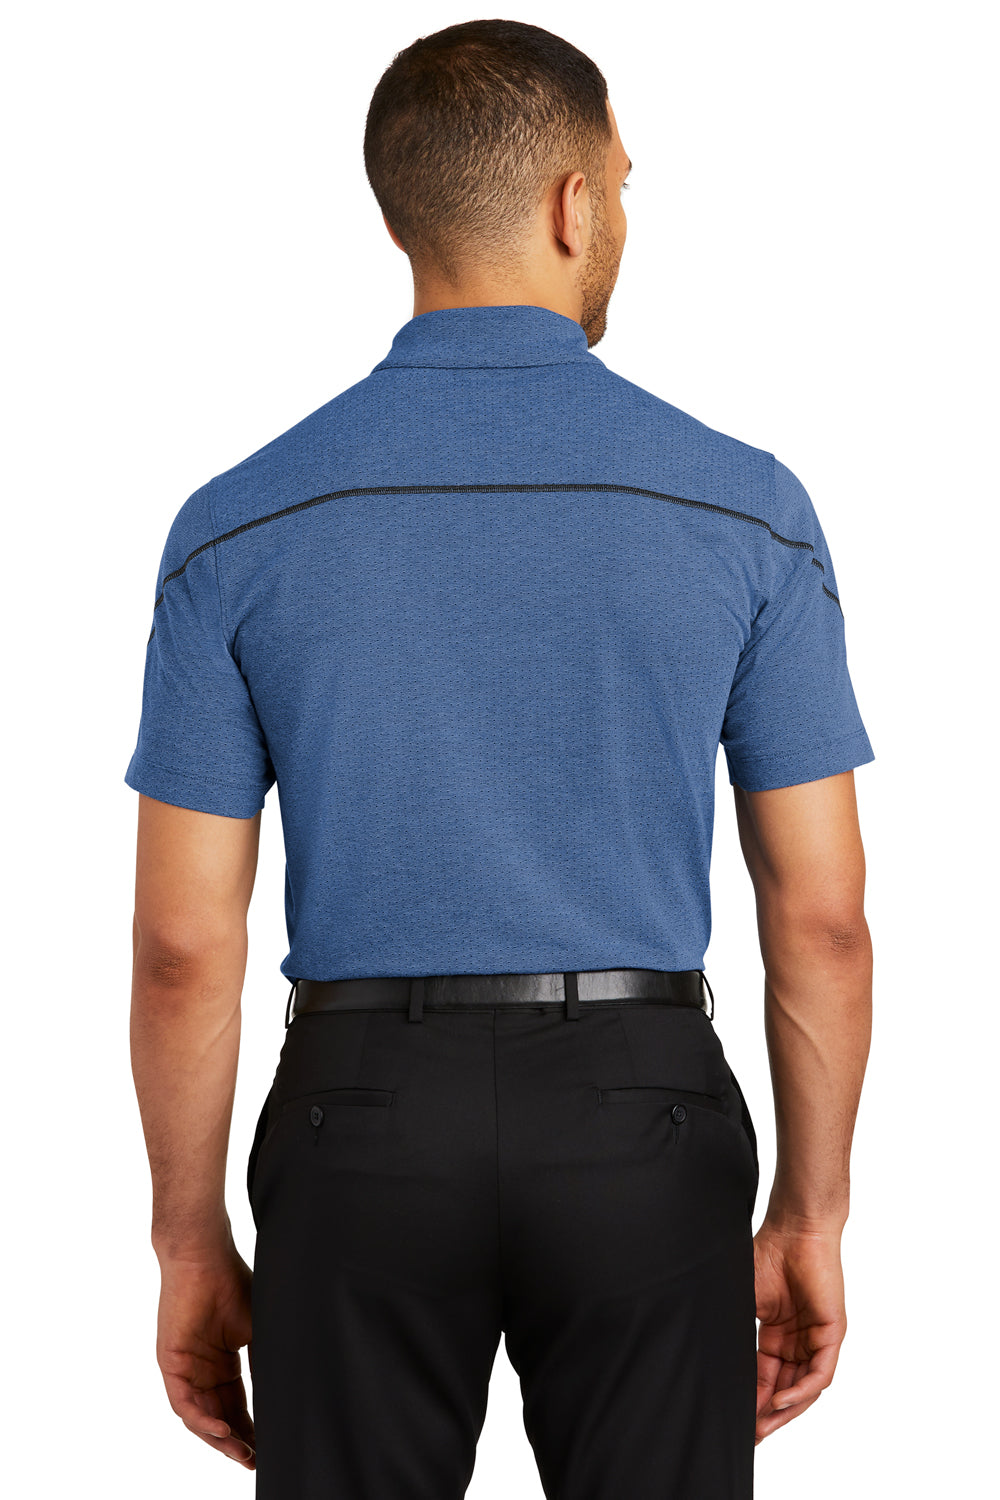 Ogio OG135 Mens Tread Moisture Wicking Short Sleeve Polo Shirt Blue Back